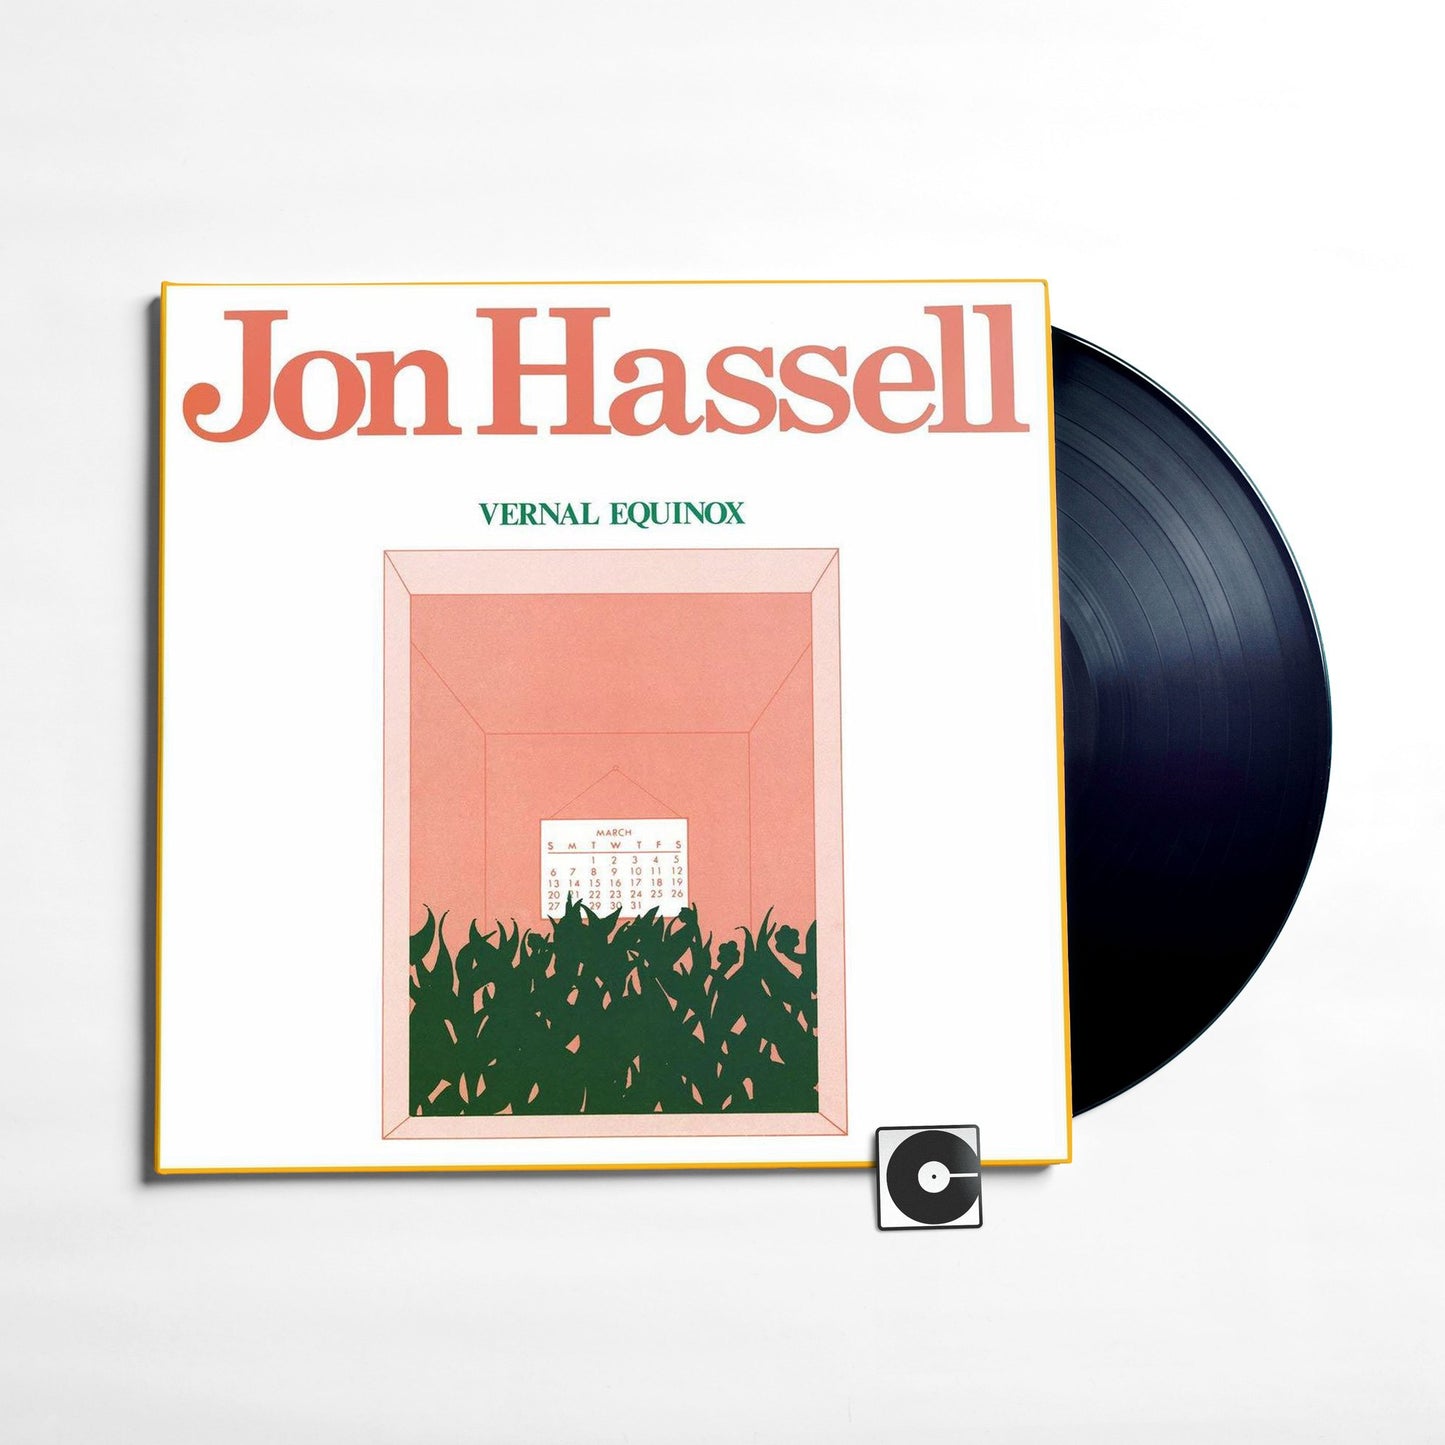 Jon Hassell - "Vernal Equinox"